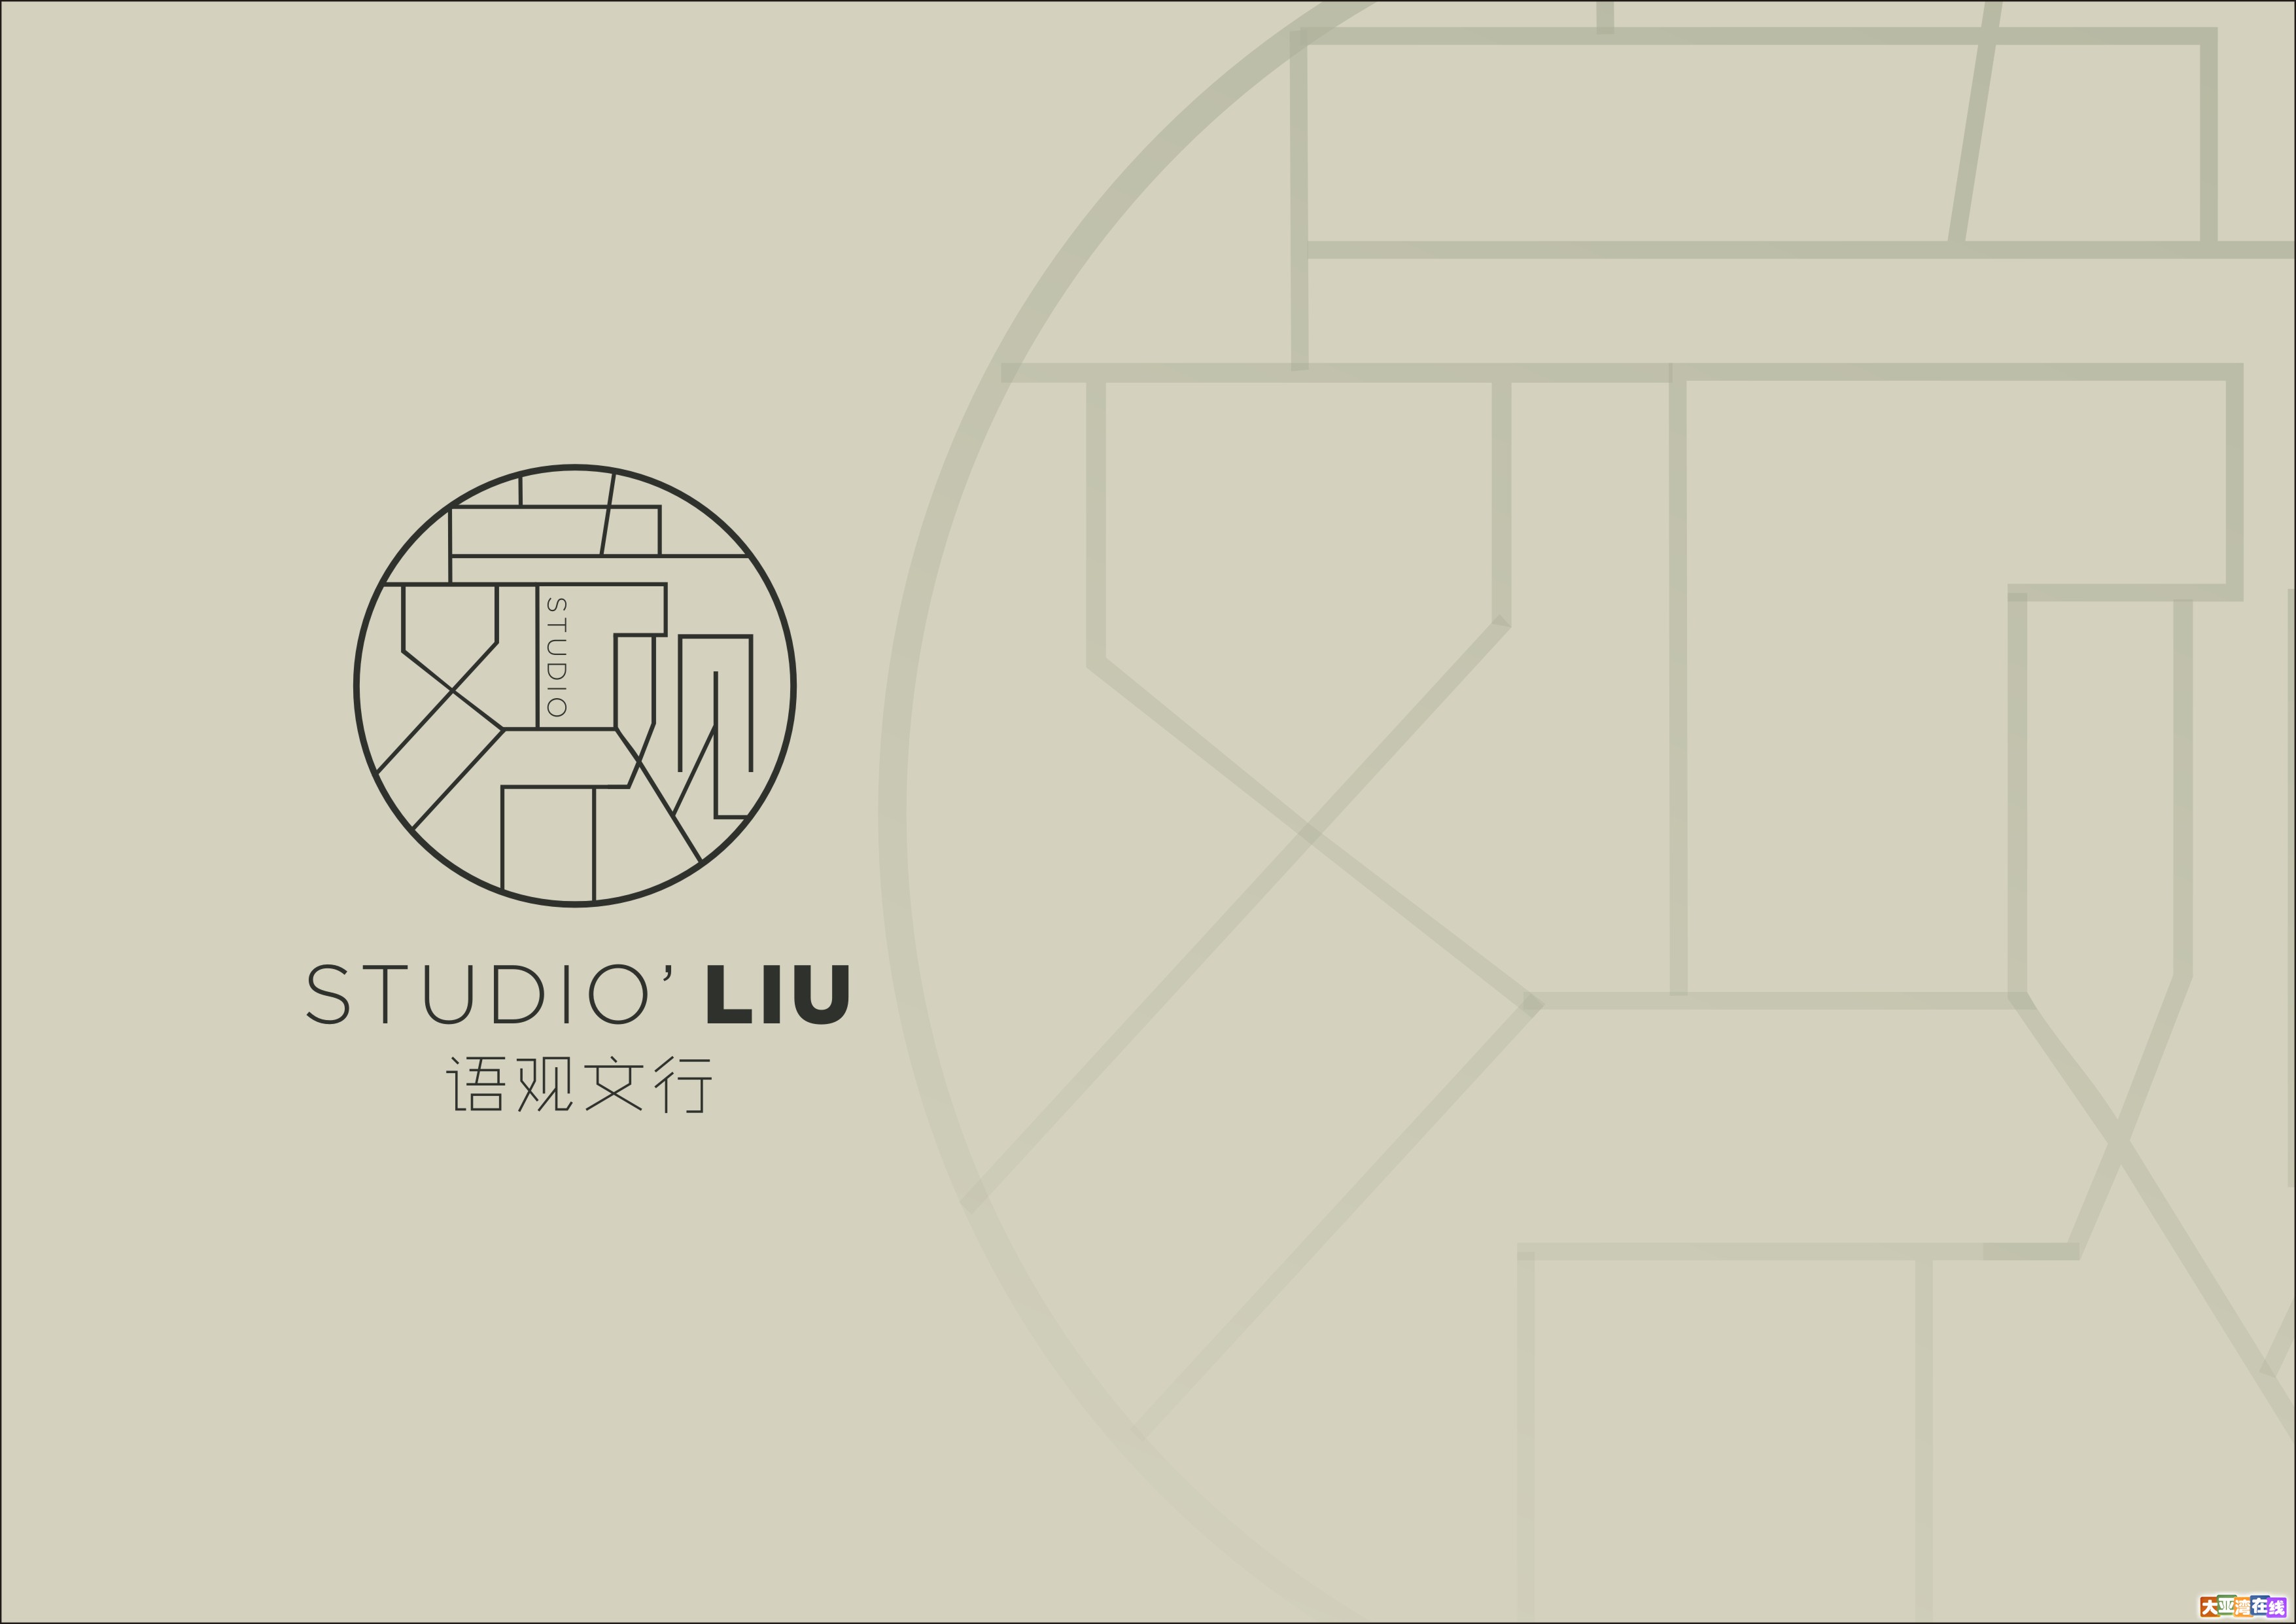 语观文行-logo2.jpg